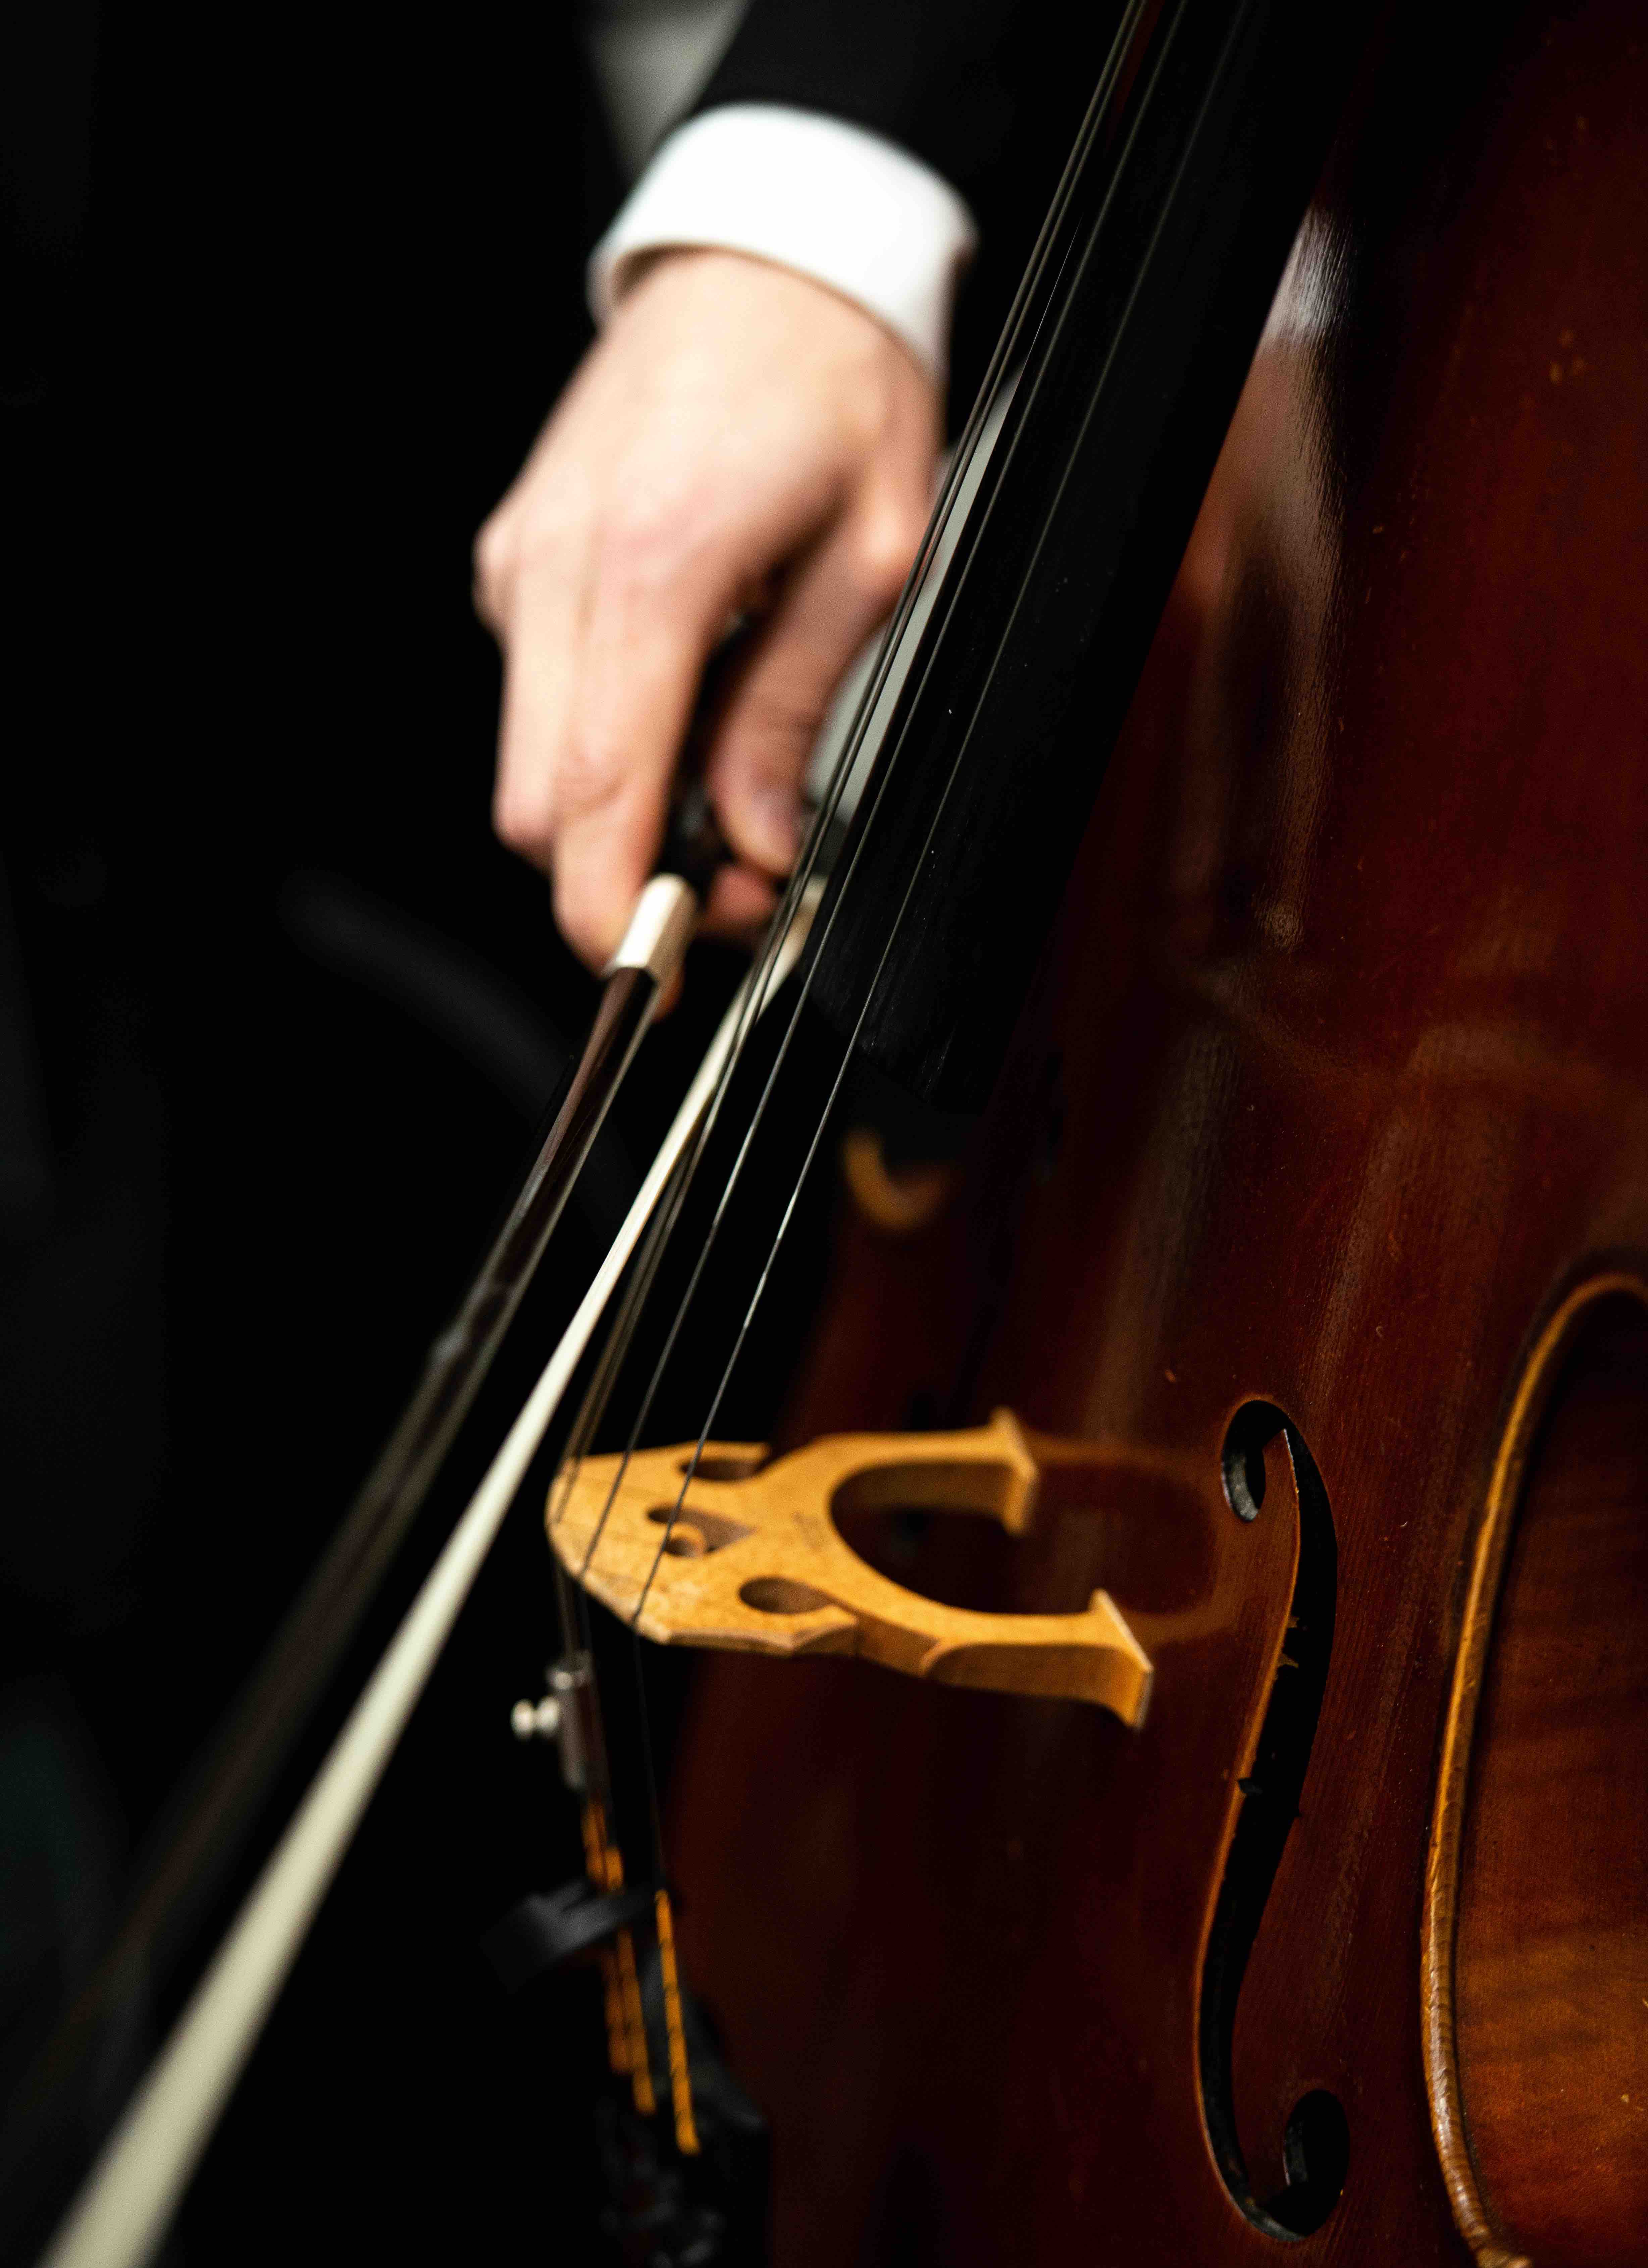 Cello close up